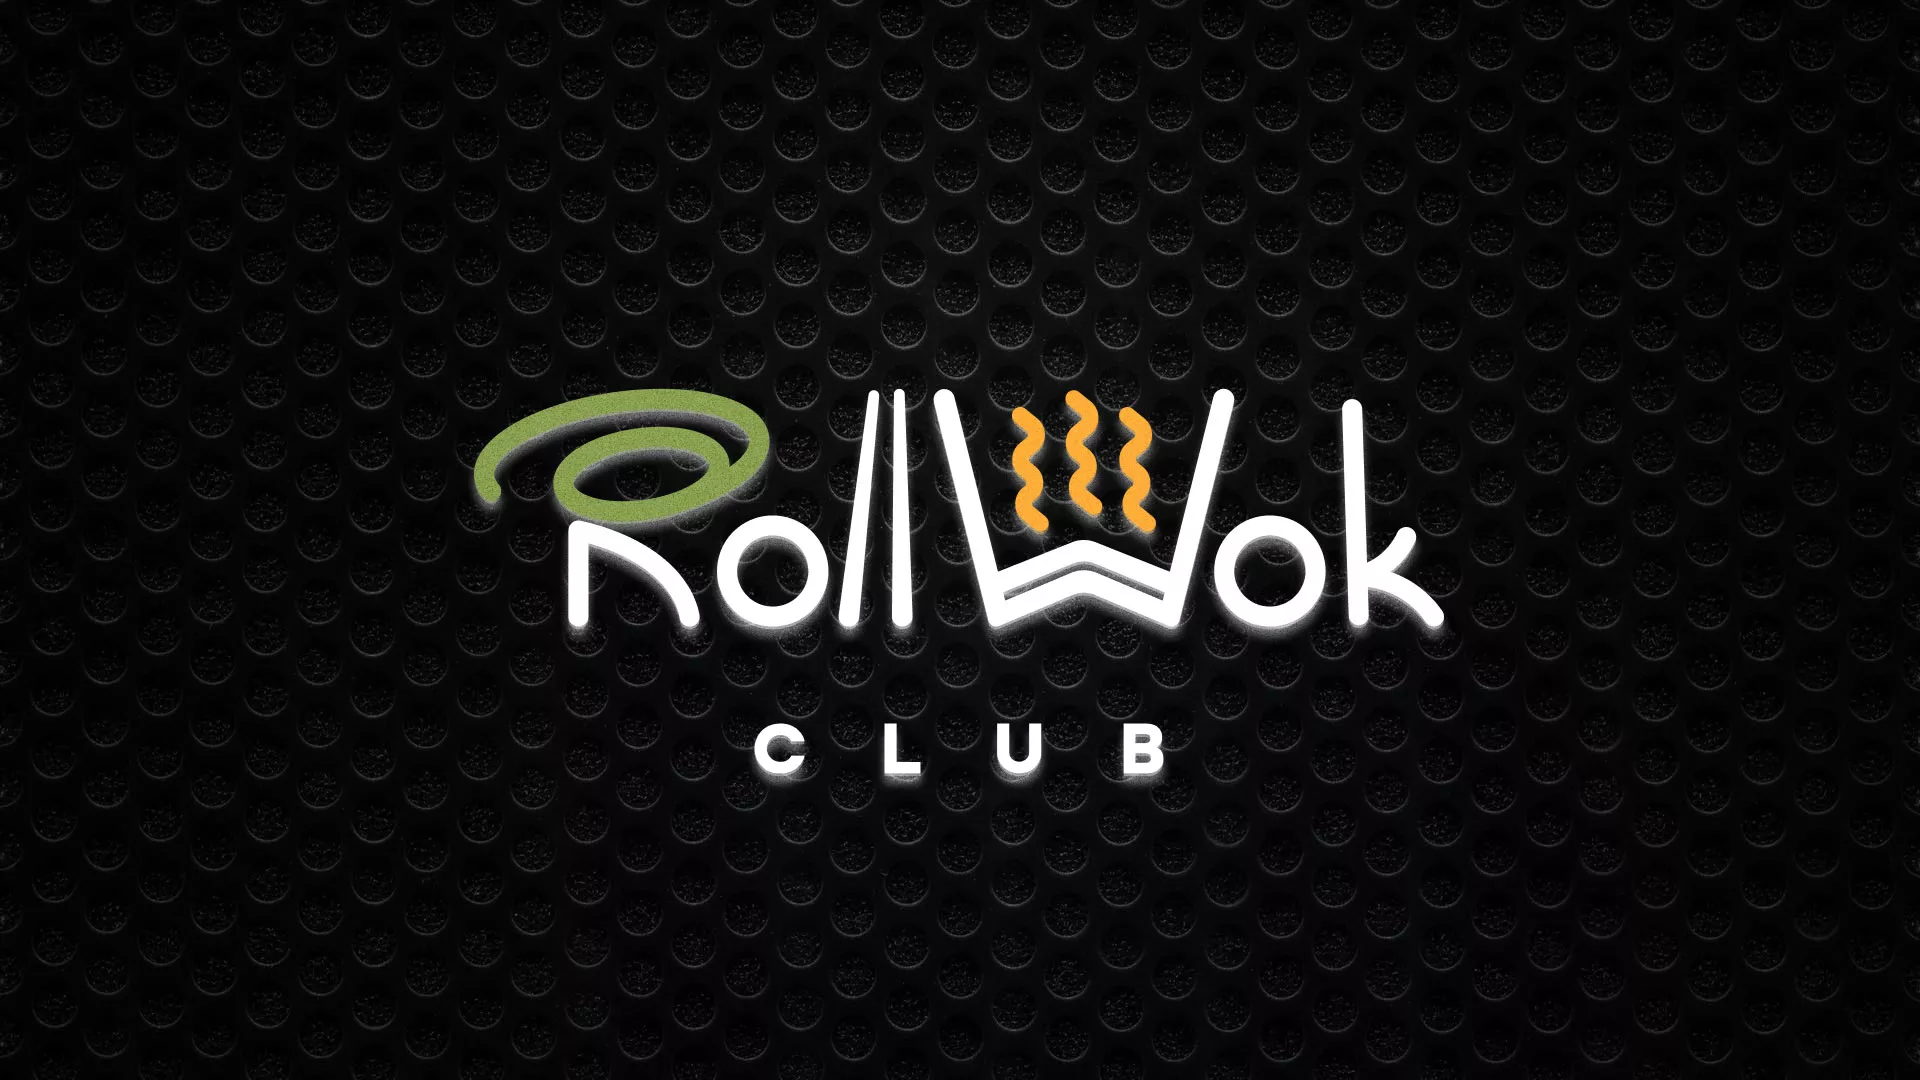 Брендирование торговых точек суши-бара «Roll Wok Club» в Мамоново